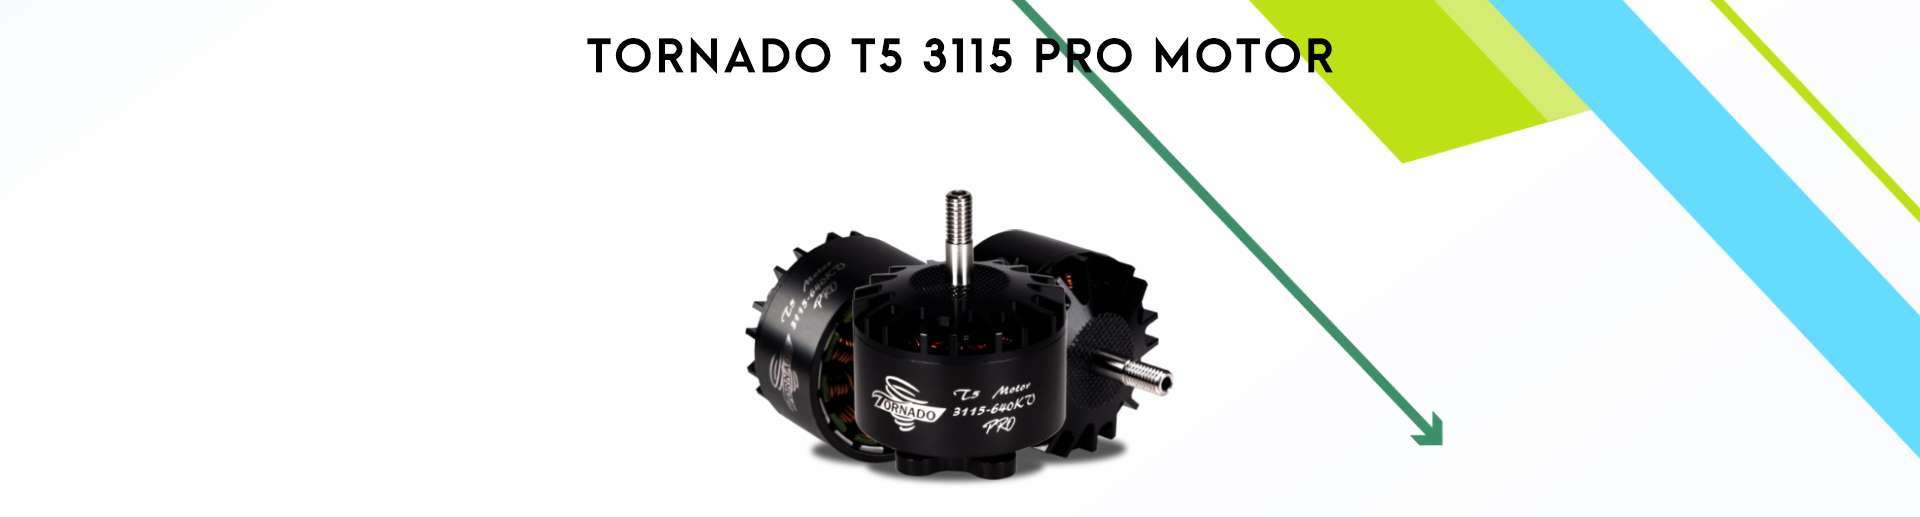 Tornado T5 3115 Pro Motor